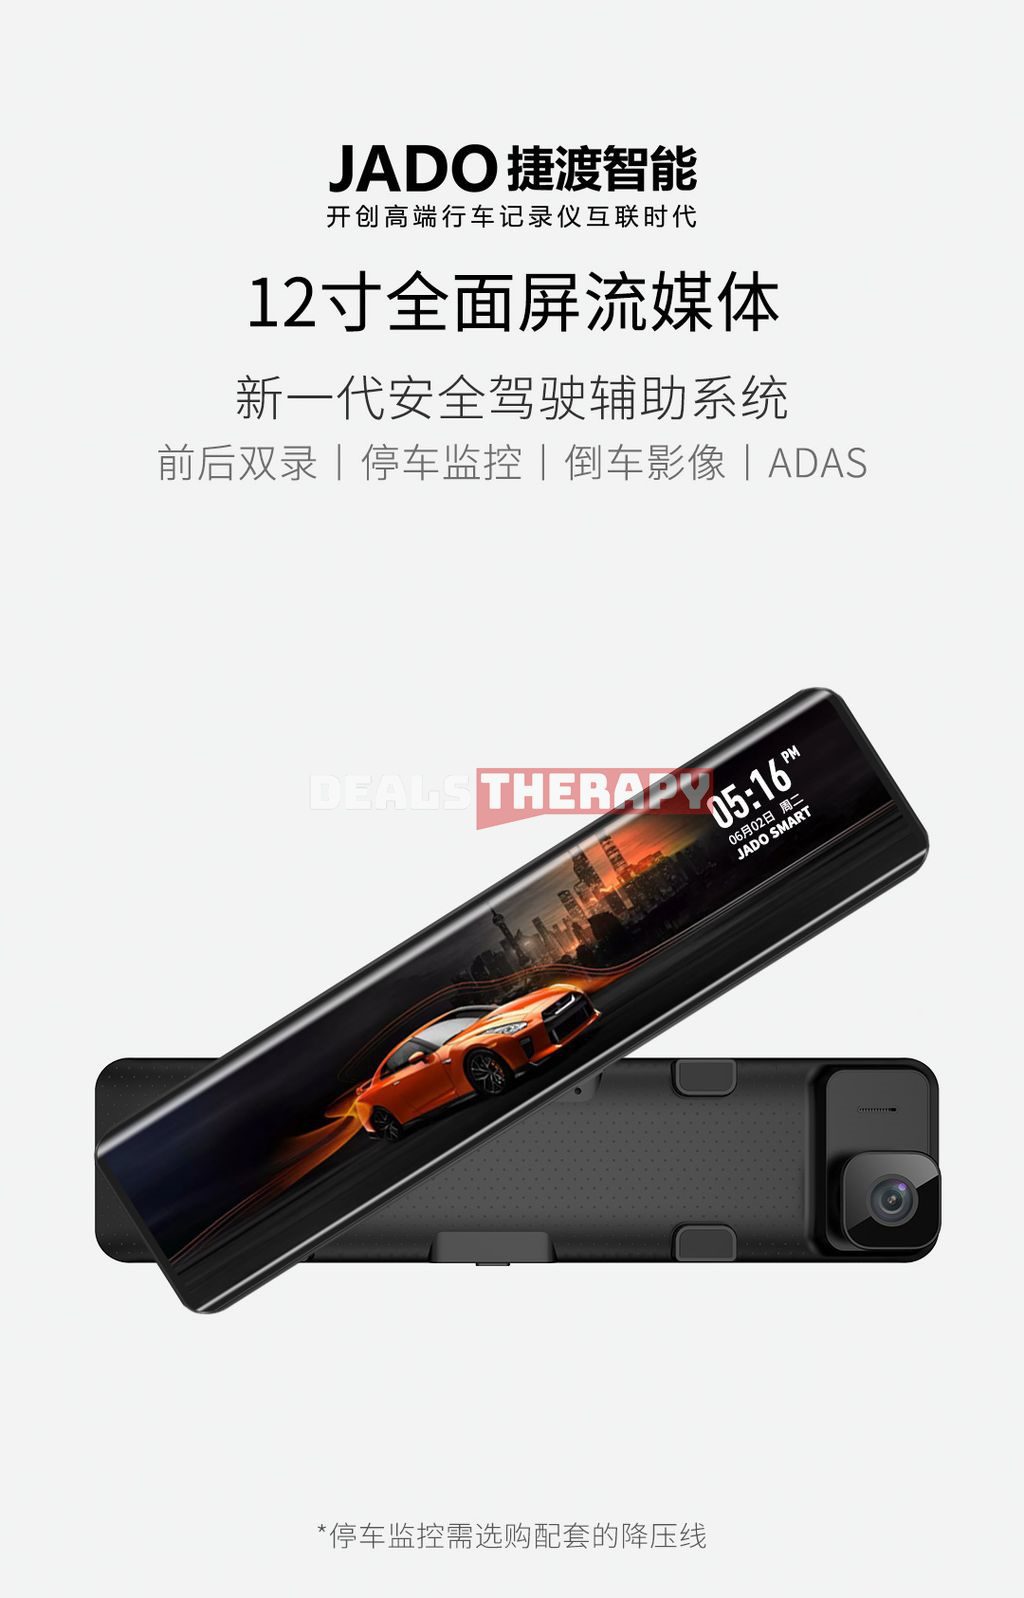 Xiaomi JADO G850C